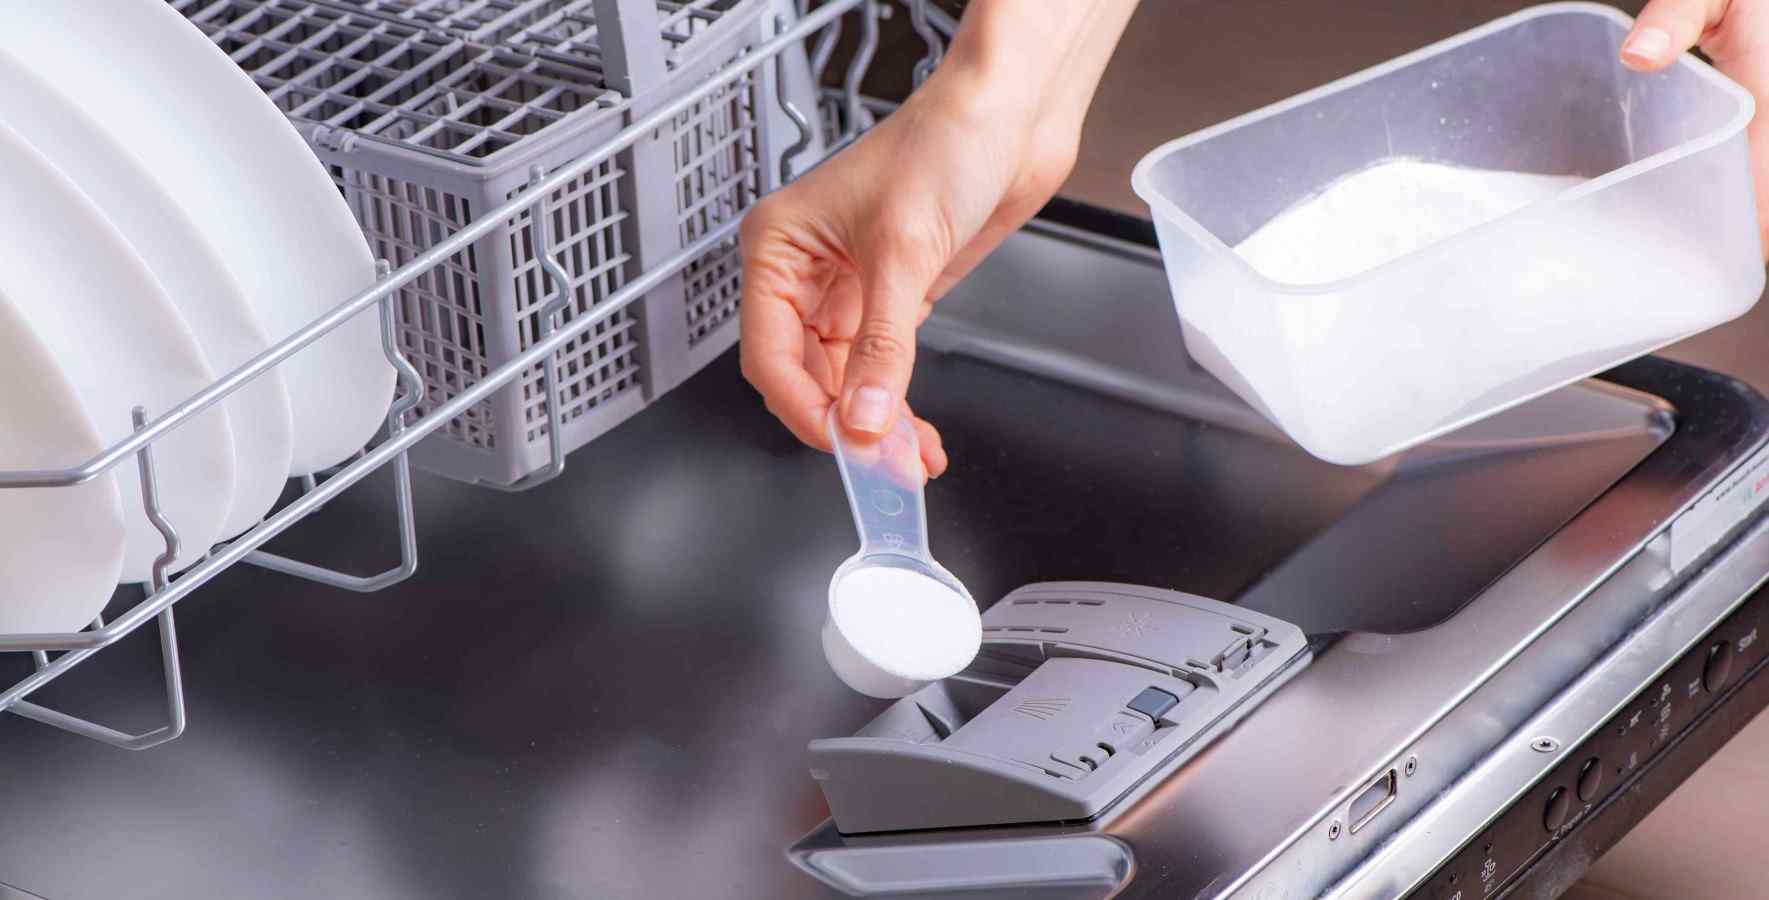 powder dishwasher detergent